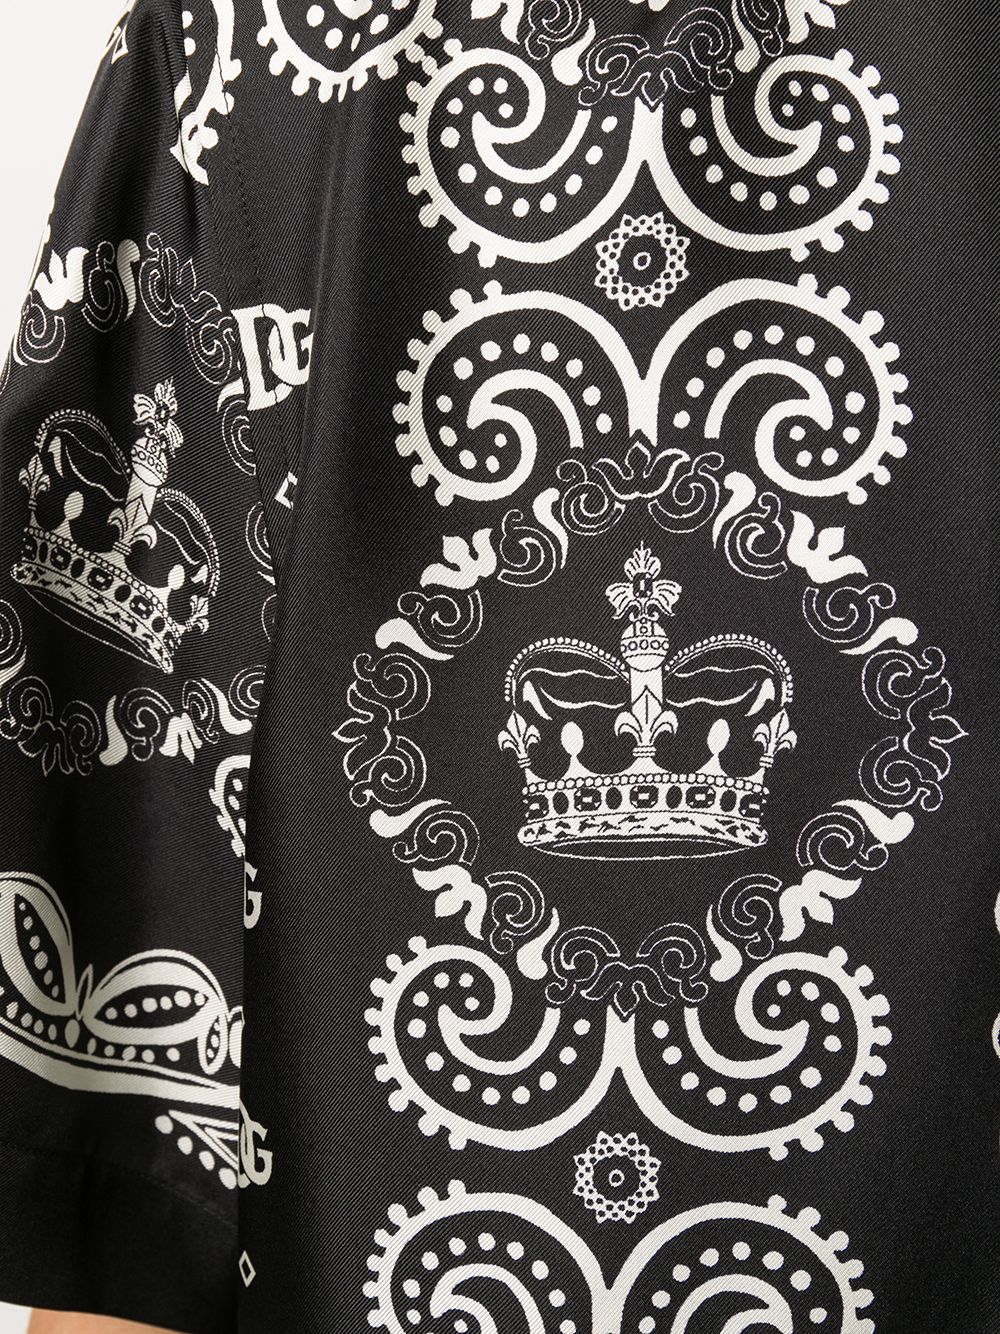 Dolce & Gabbana bandana-print T-shirt - ShopStyle